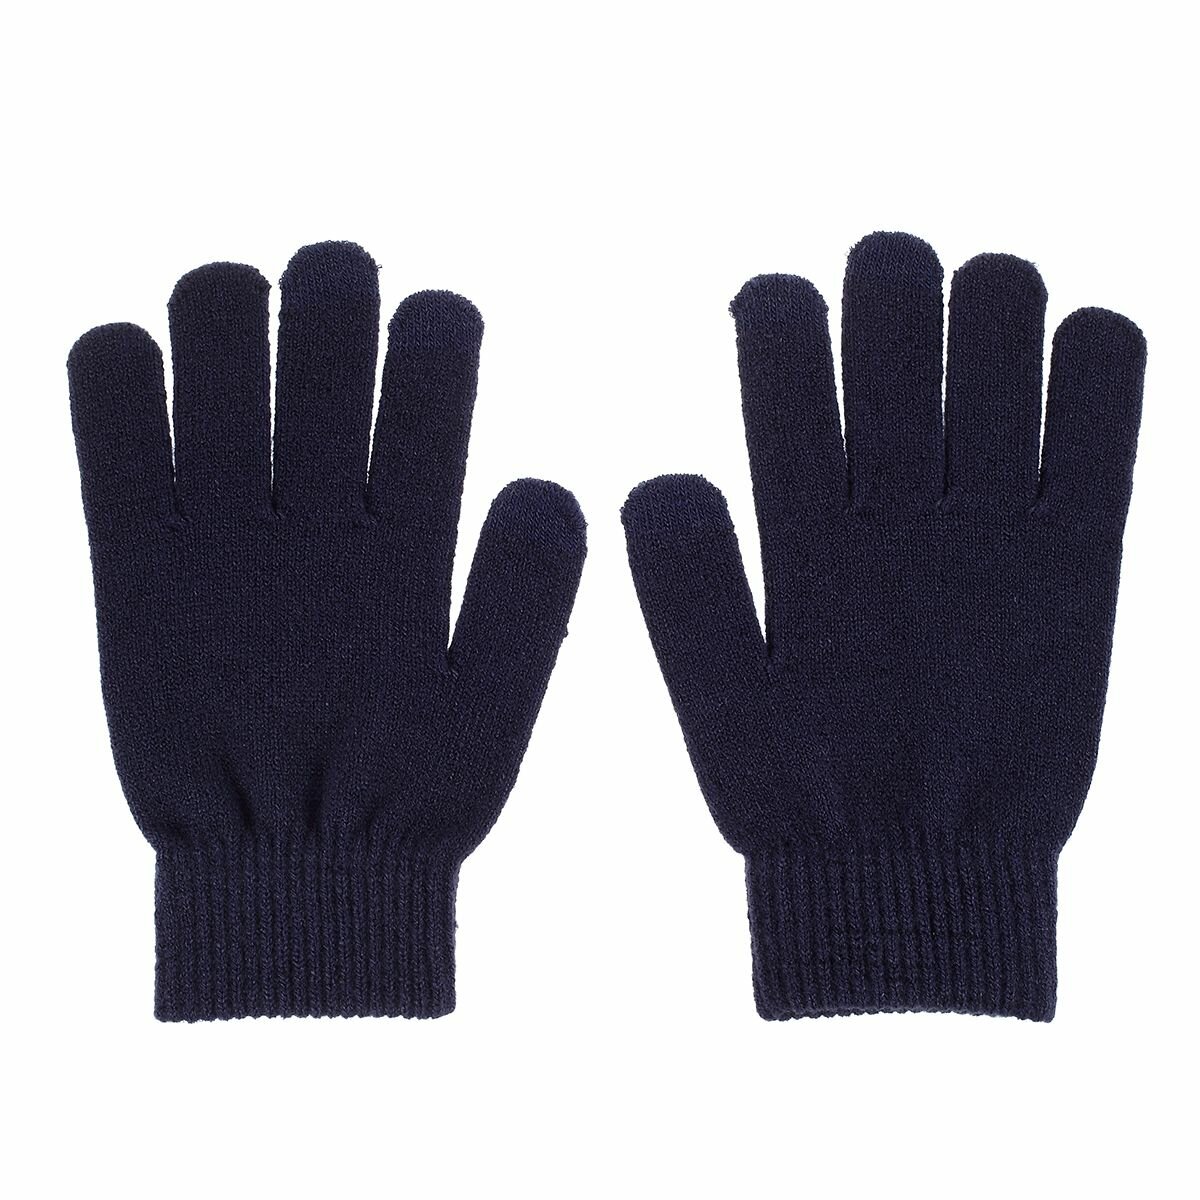 Зимние женские вязаные перчатки для работы с сенсорным экраном - темно-синие 